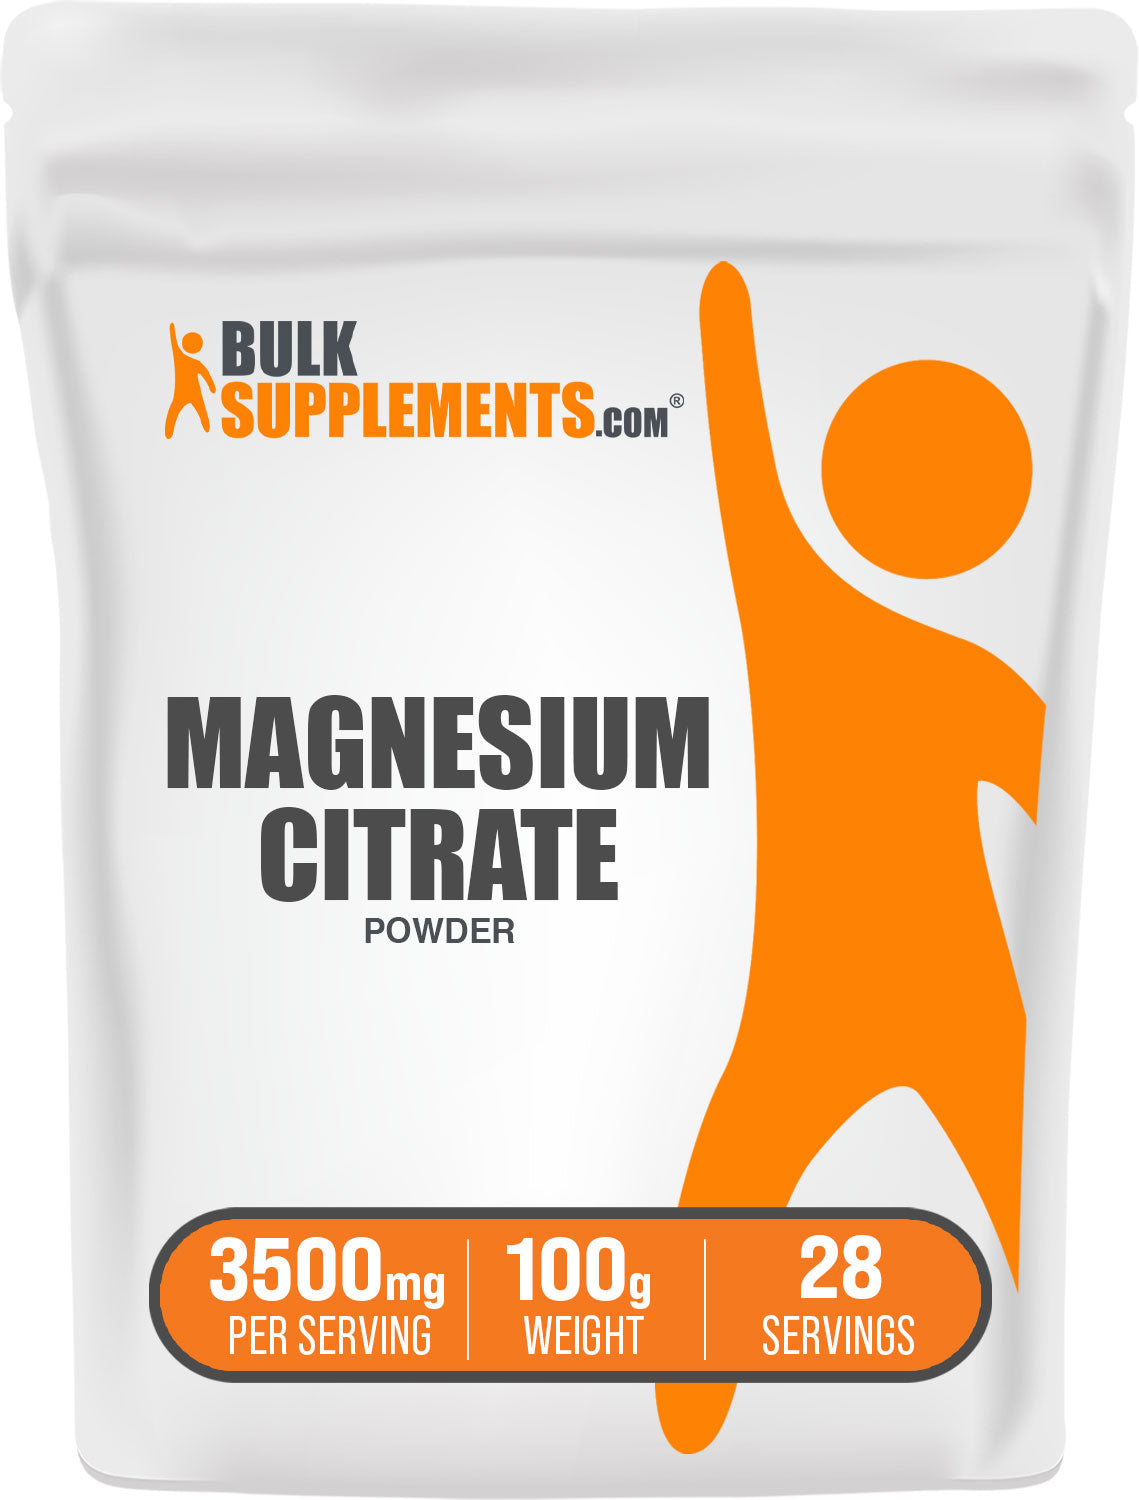 Magnesium citrate magnesium powder 100g bag 